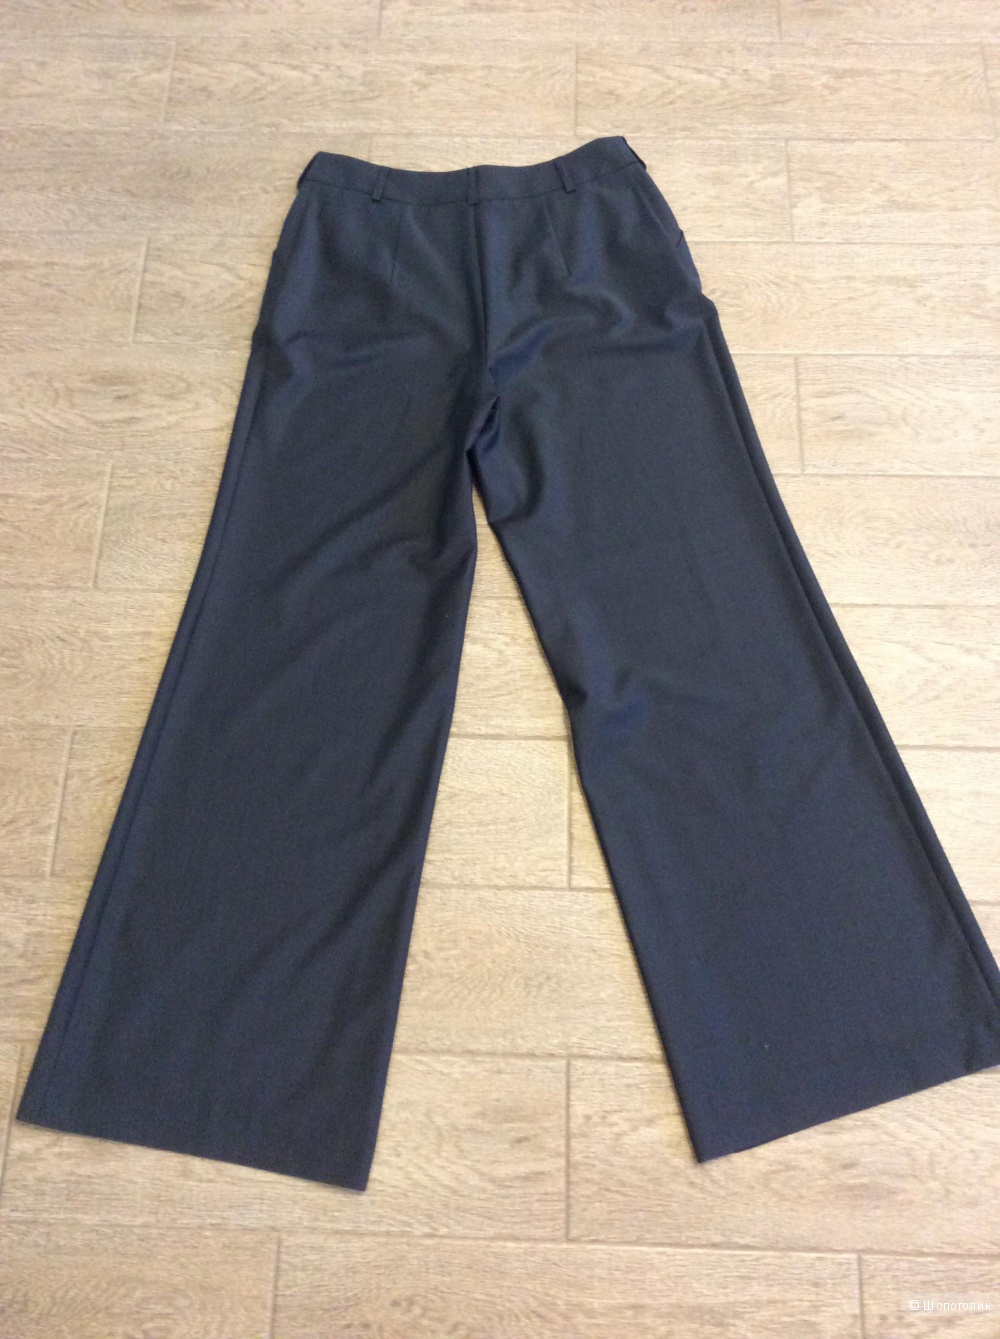 Широкие брюки MReason в стиле Марлен Дитрих р.48